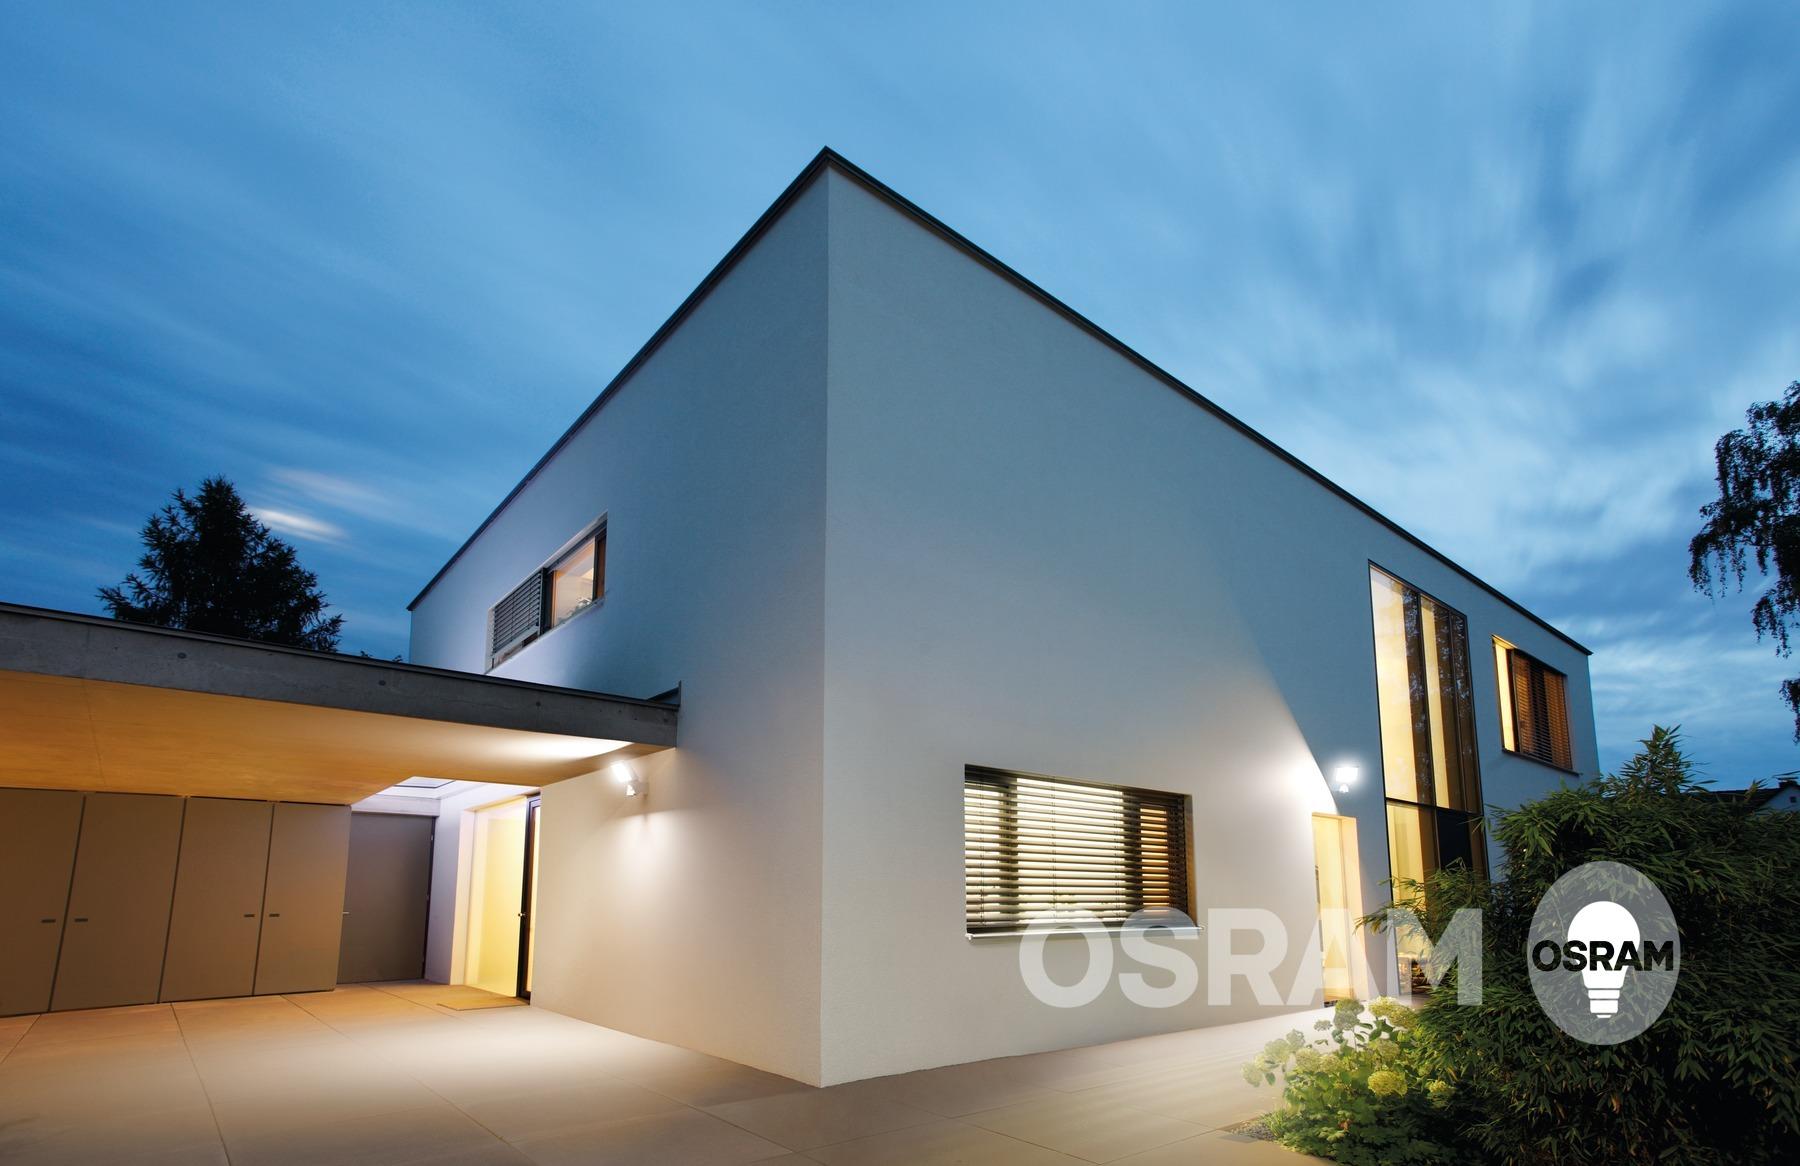 Ein Sommerabend daheim #beleuchtung ©OSRAM GmbH